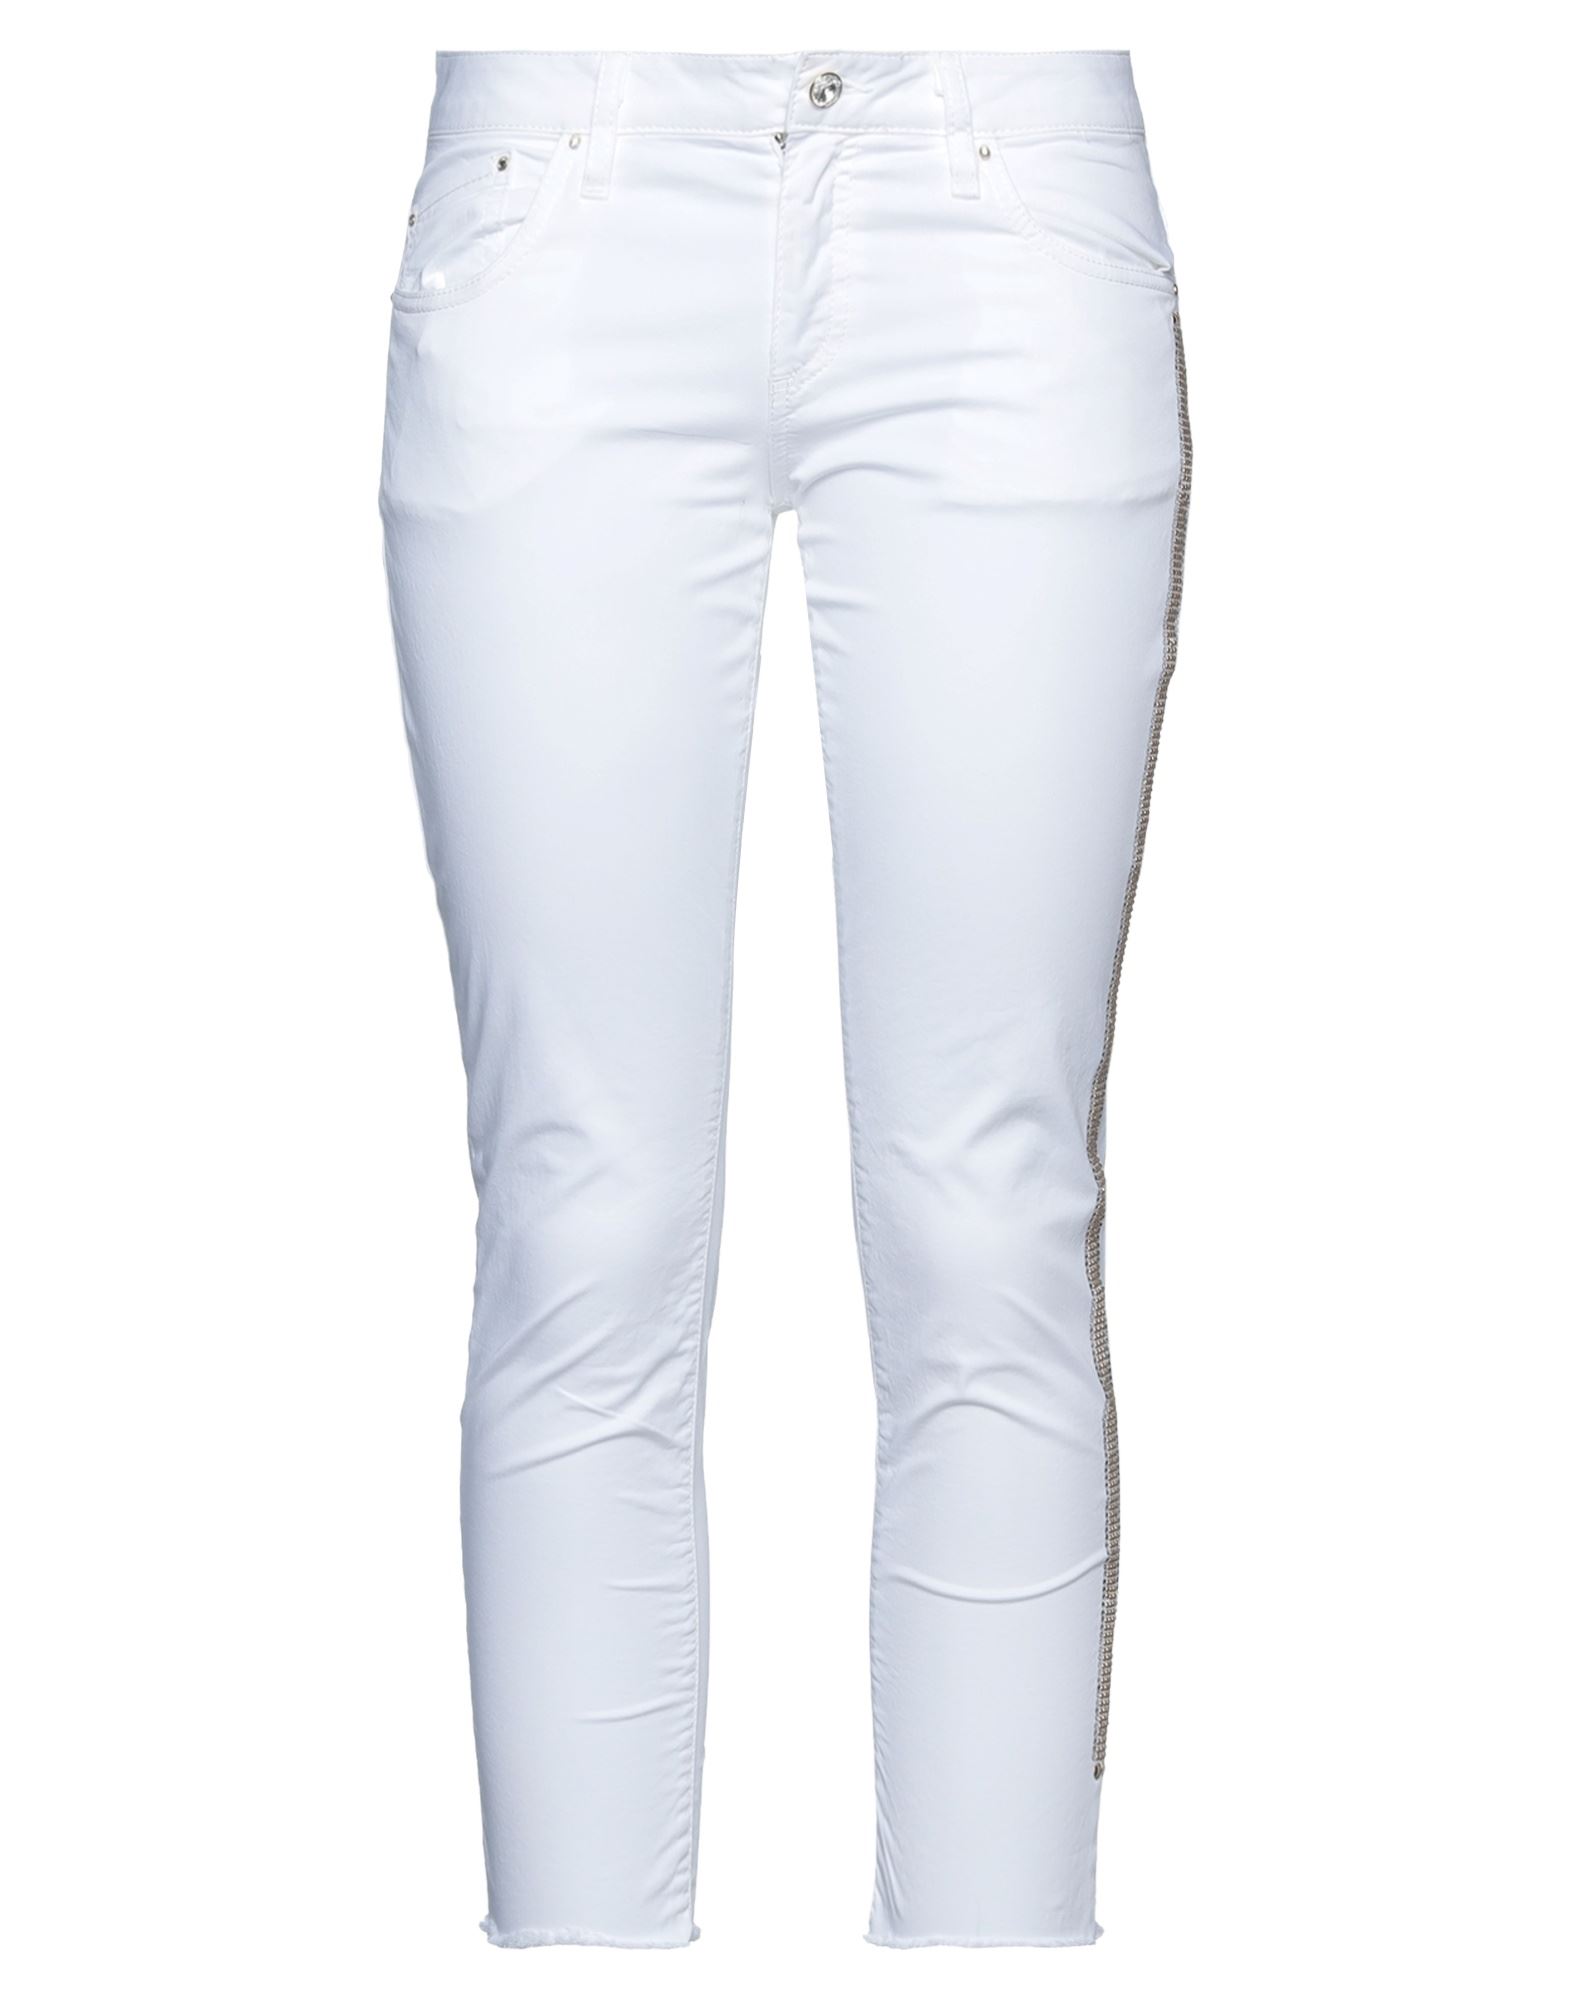 Shop Ean 13 Woman Cropped Pants White Size 8 Cotton, Elastane